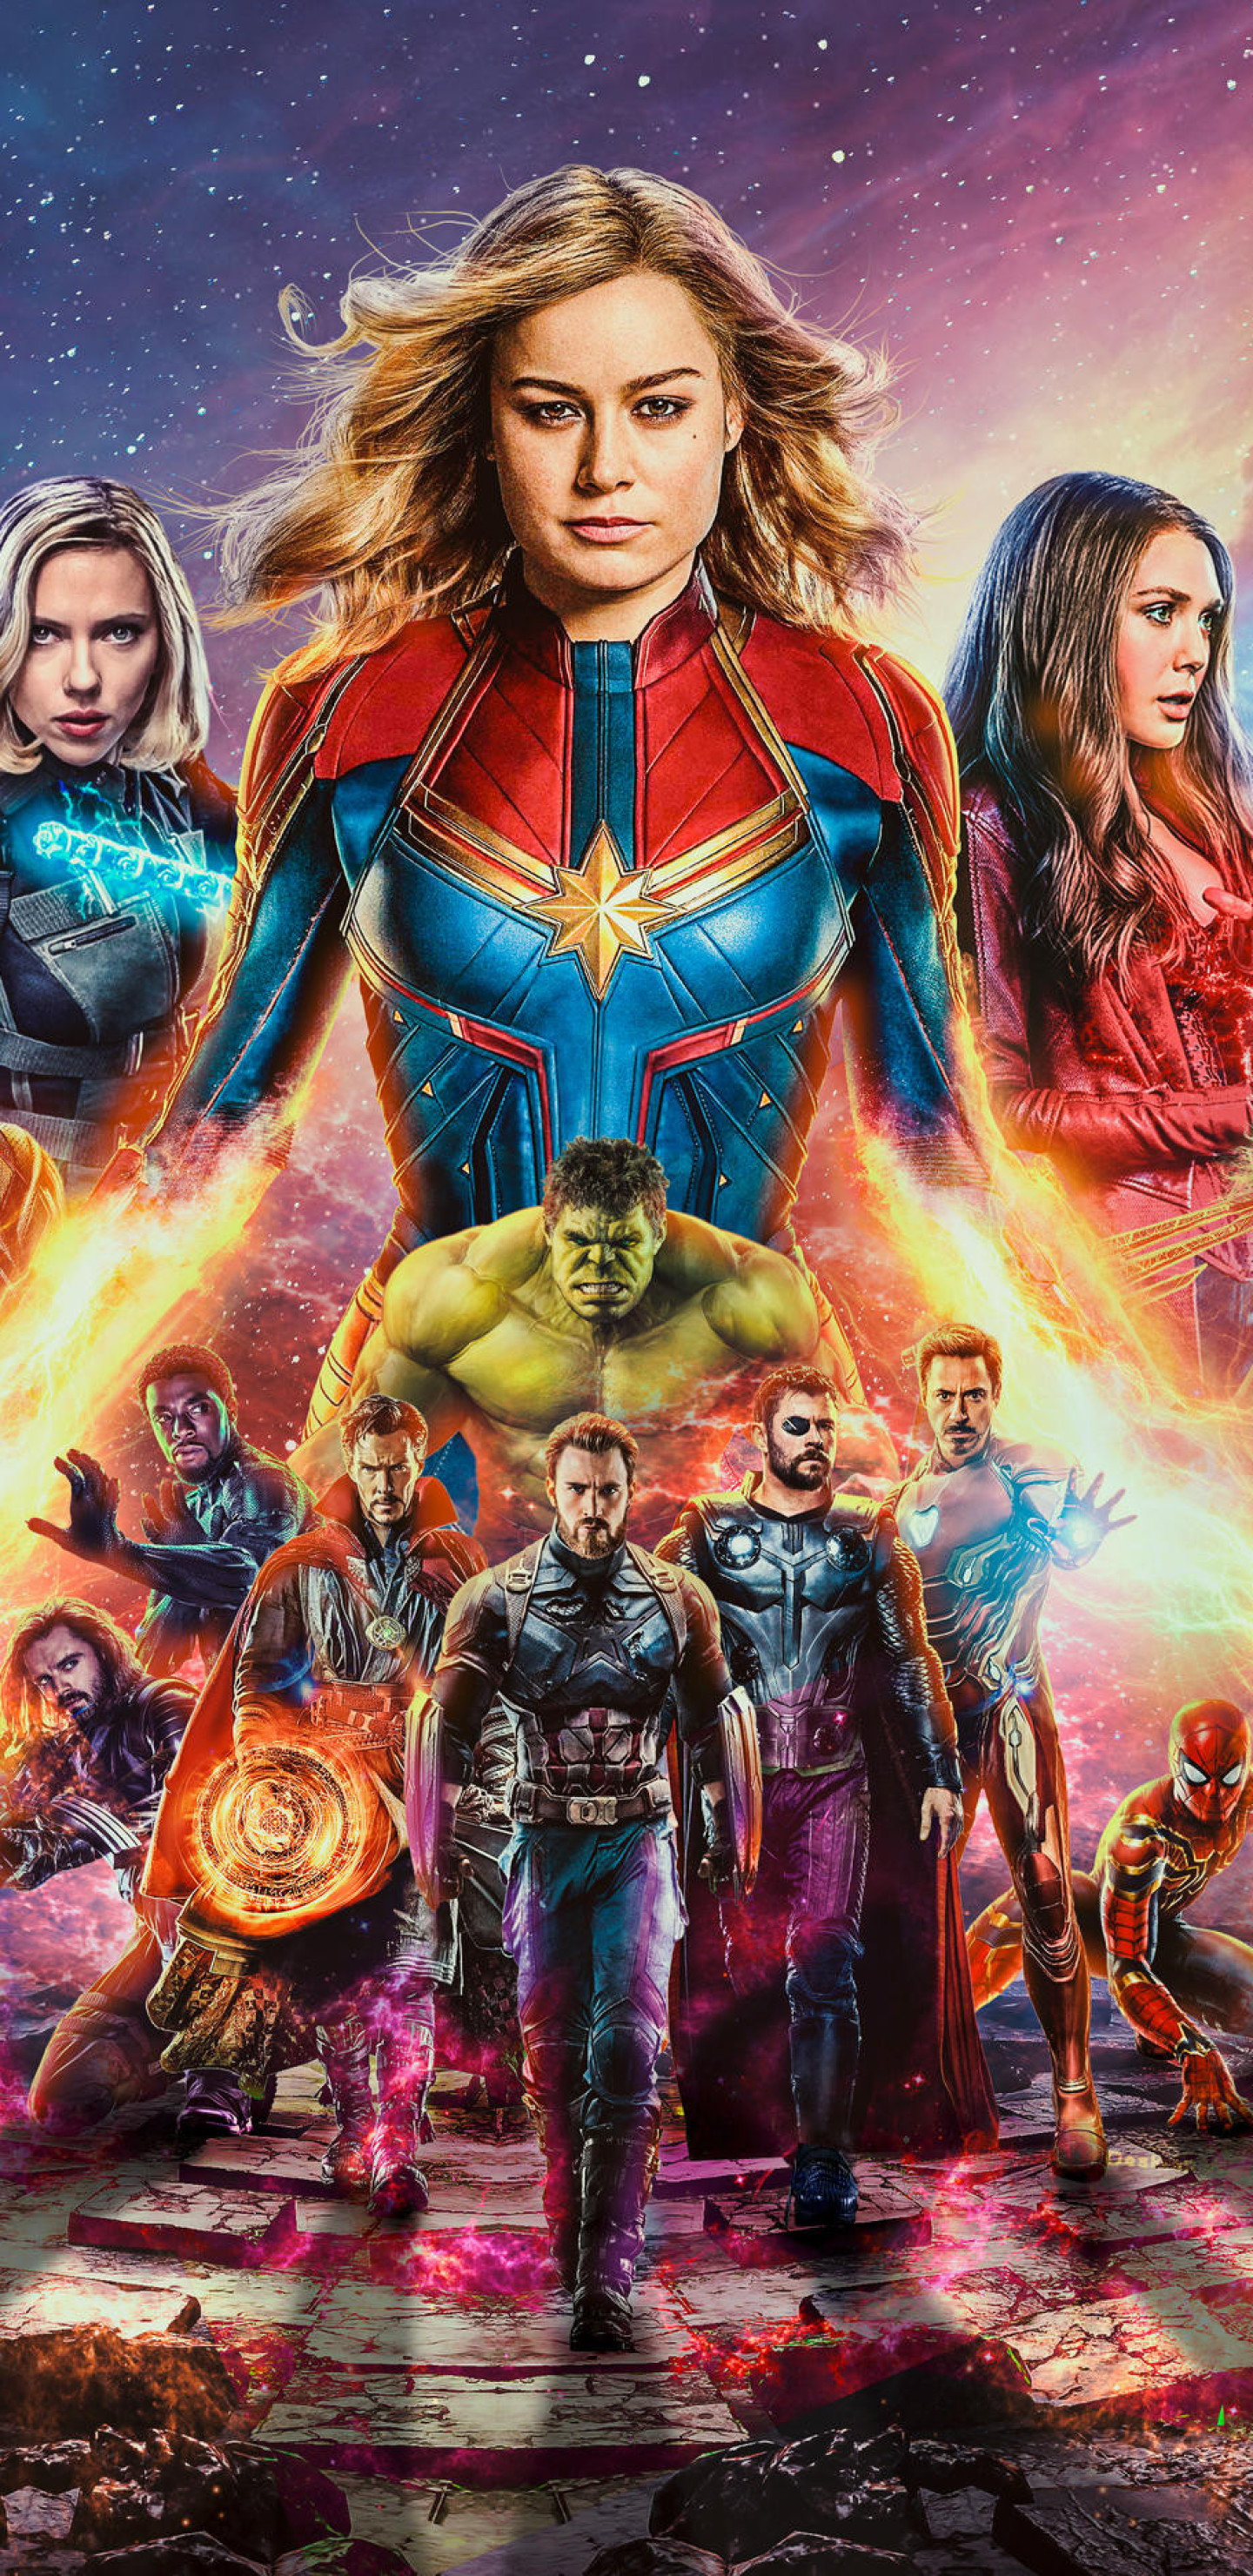 Avengers Endgame Live Wallpaper For Android Game Wallpaper